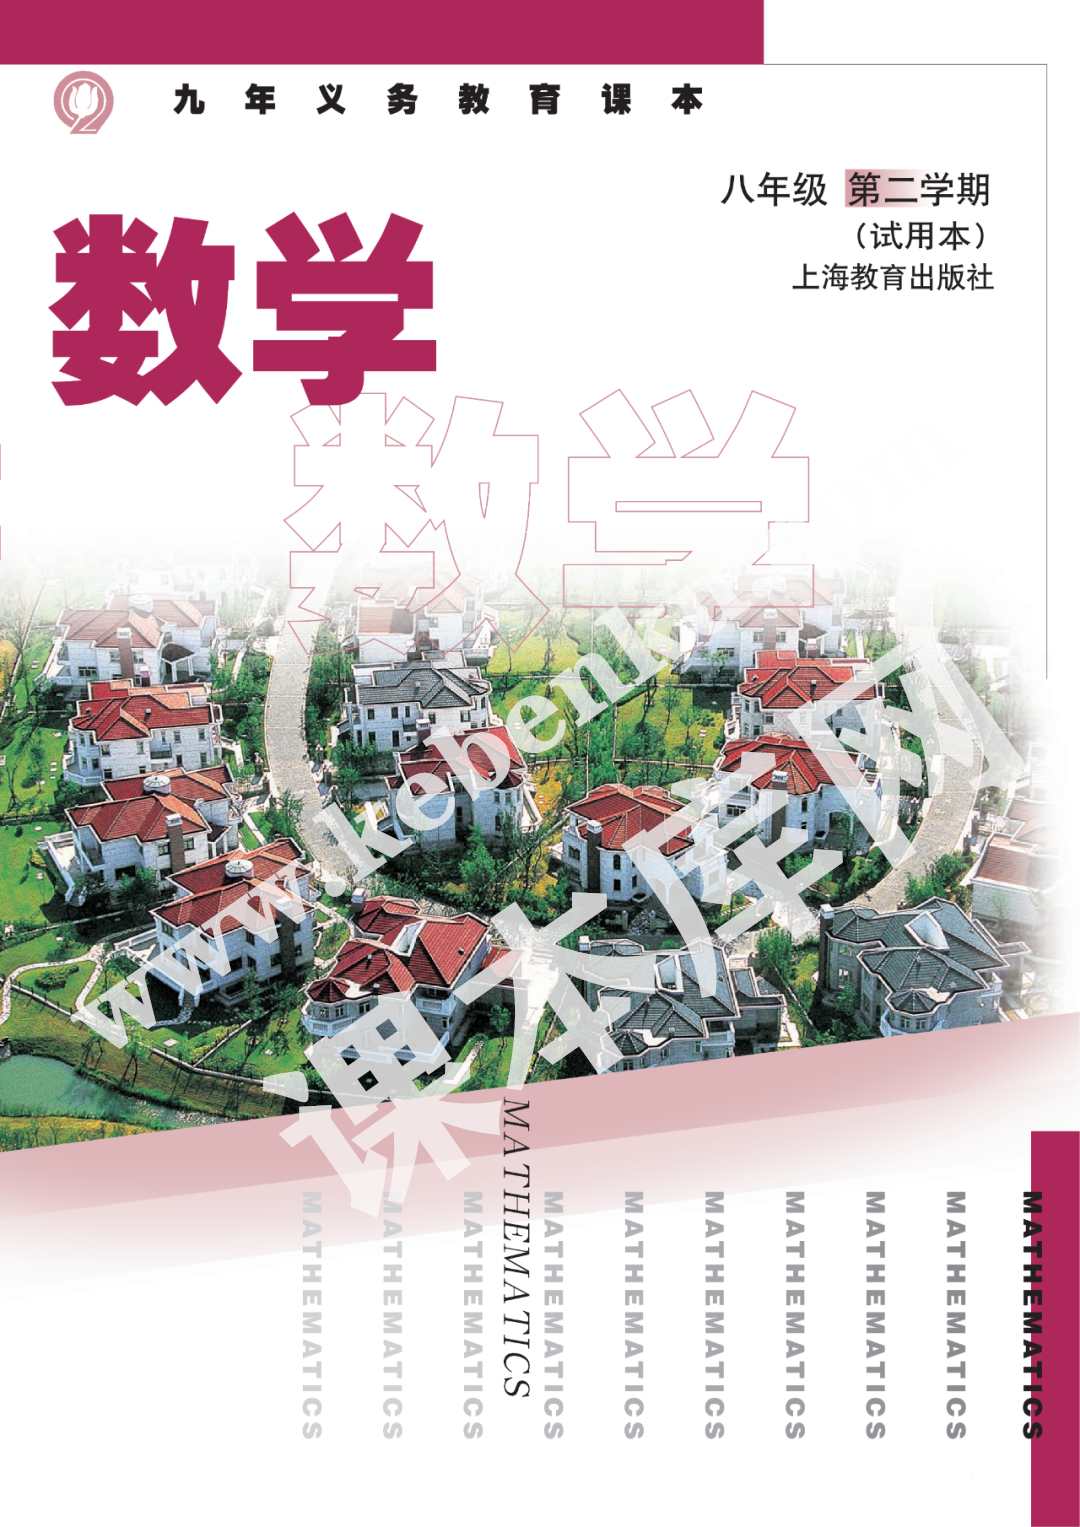 上海教育出版社九年义务教育课本八年级数学第二学期(试用本)电子课本